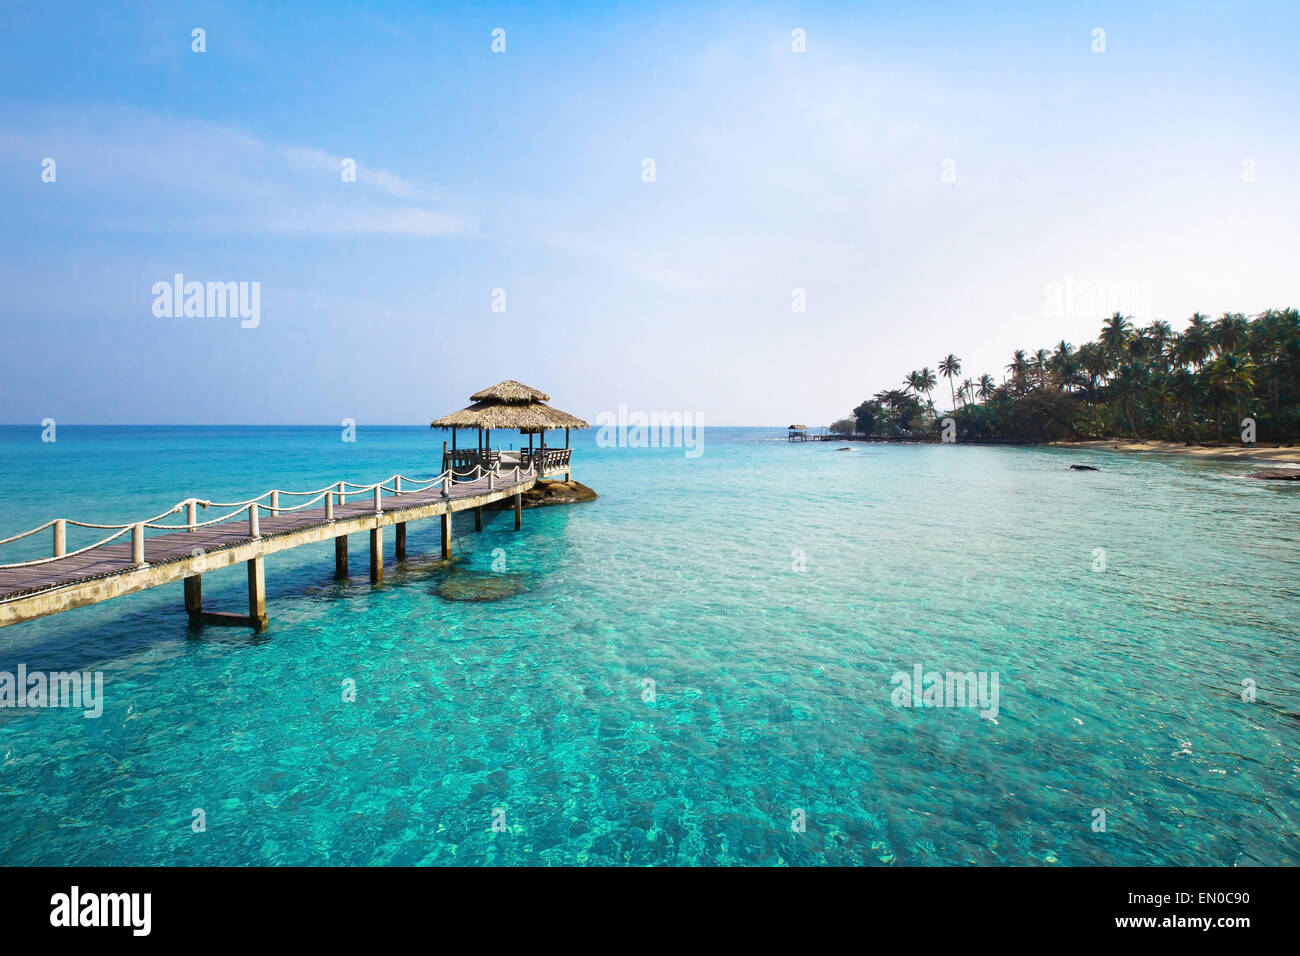 paradise island Stock Photo